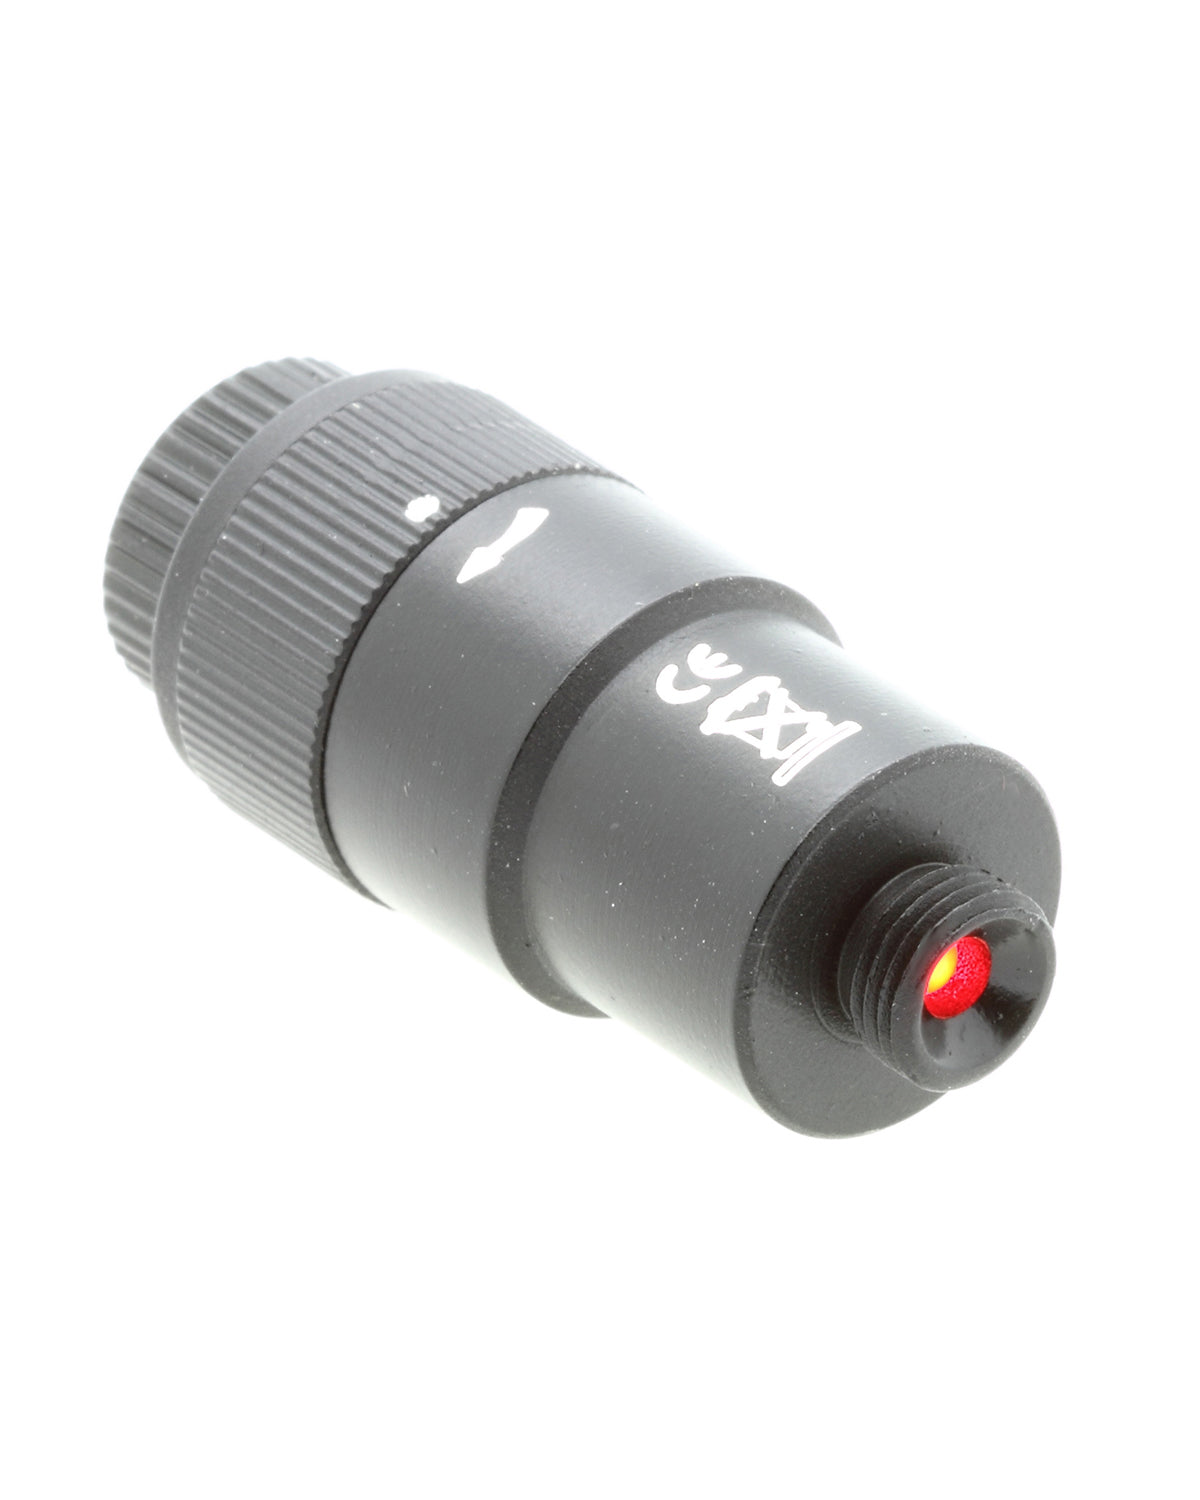 Bresser Illumination Unit Polefinder EXOS-2 Thread M8x0.75